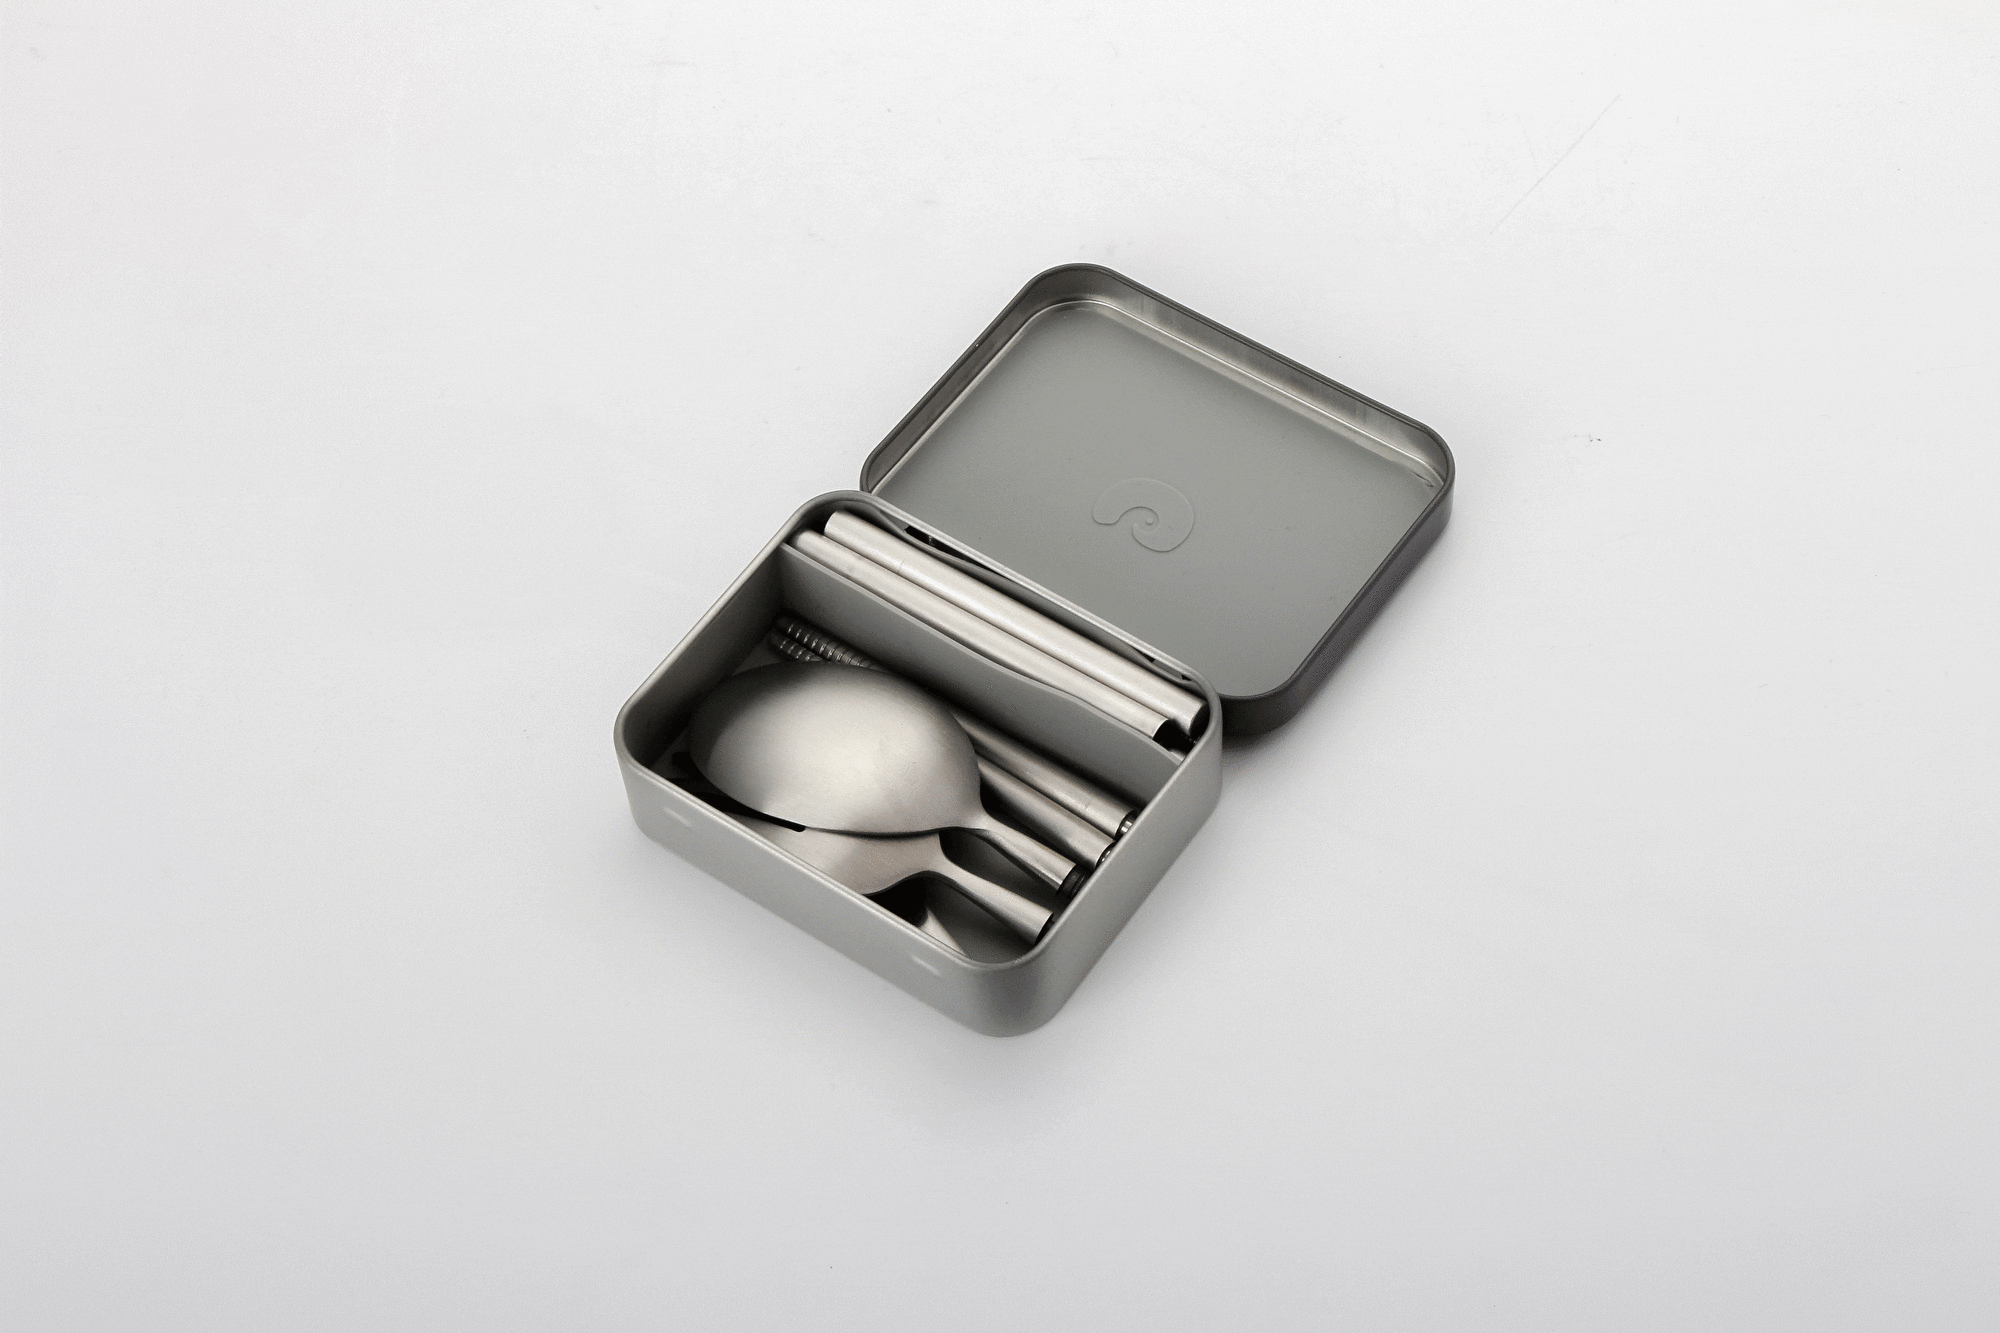 世界で一番小さい、一生モノのカードサイズ食器セット【Outlery】 - CAMPFIRE (キャンプファイヤー)